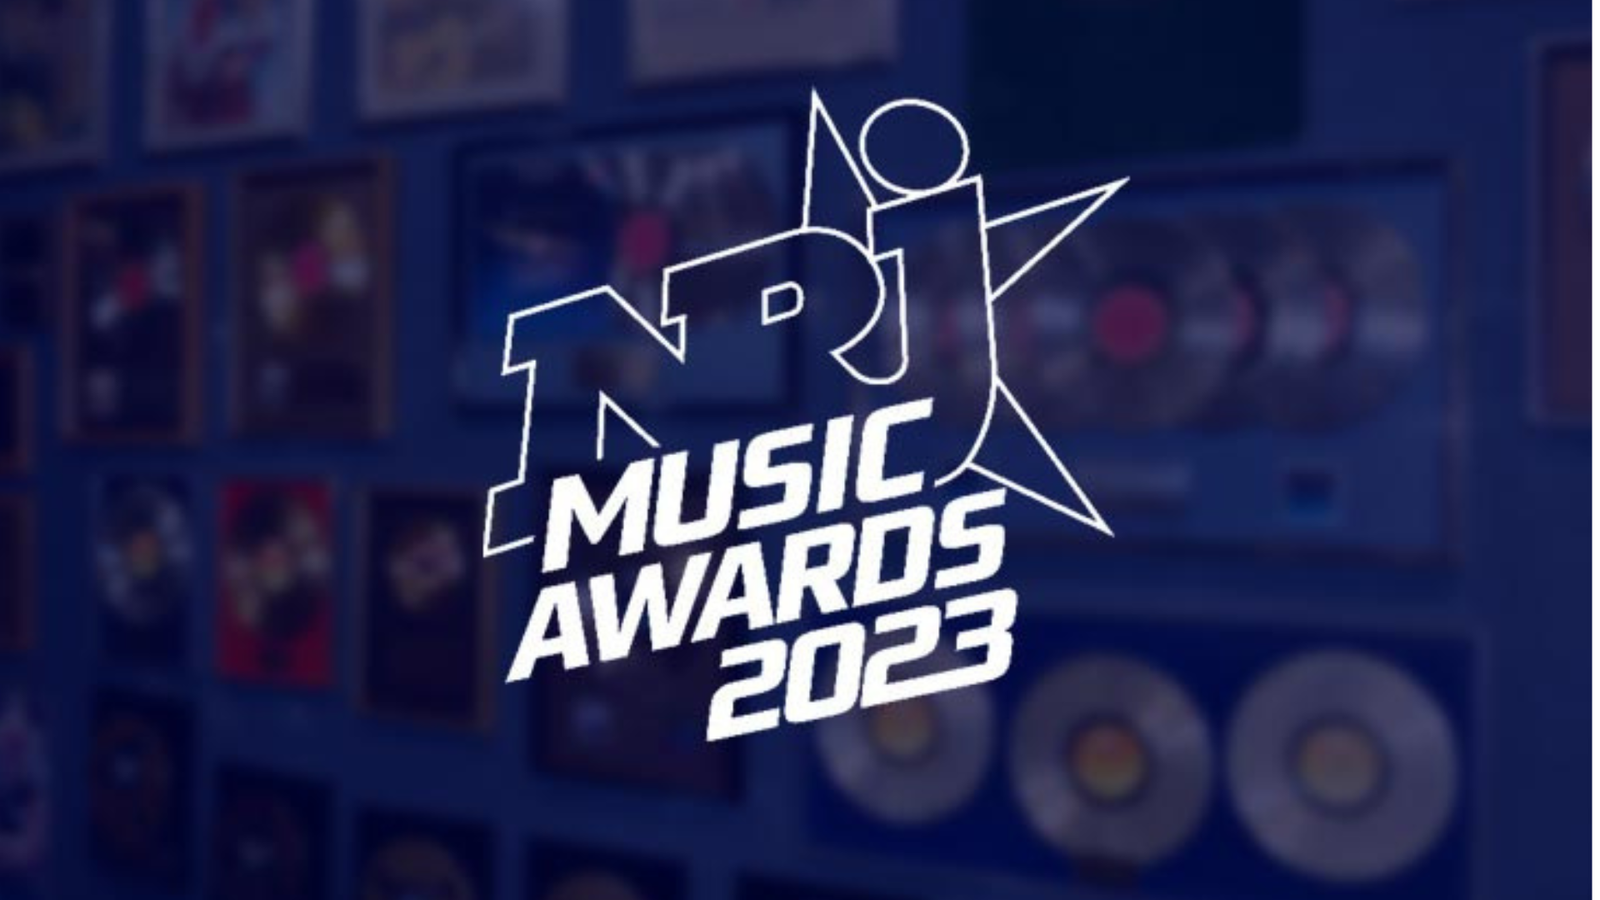 The NRJ Music Awards Logo